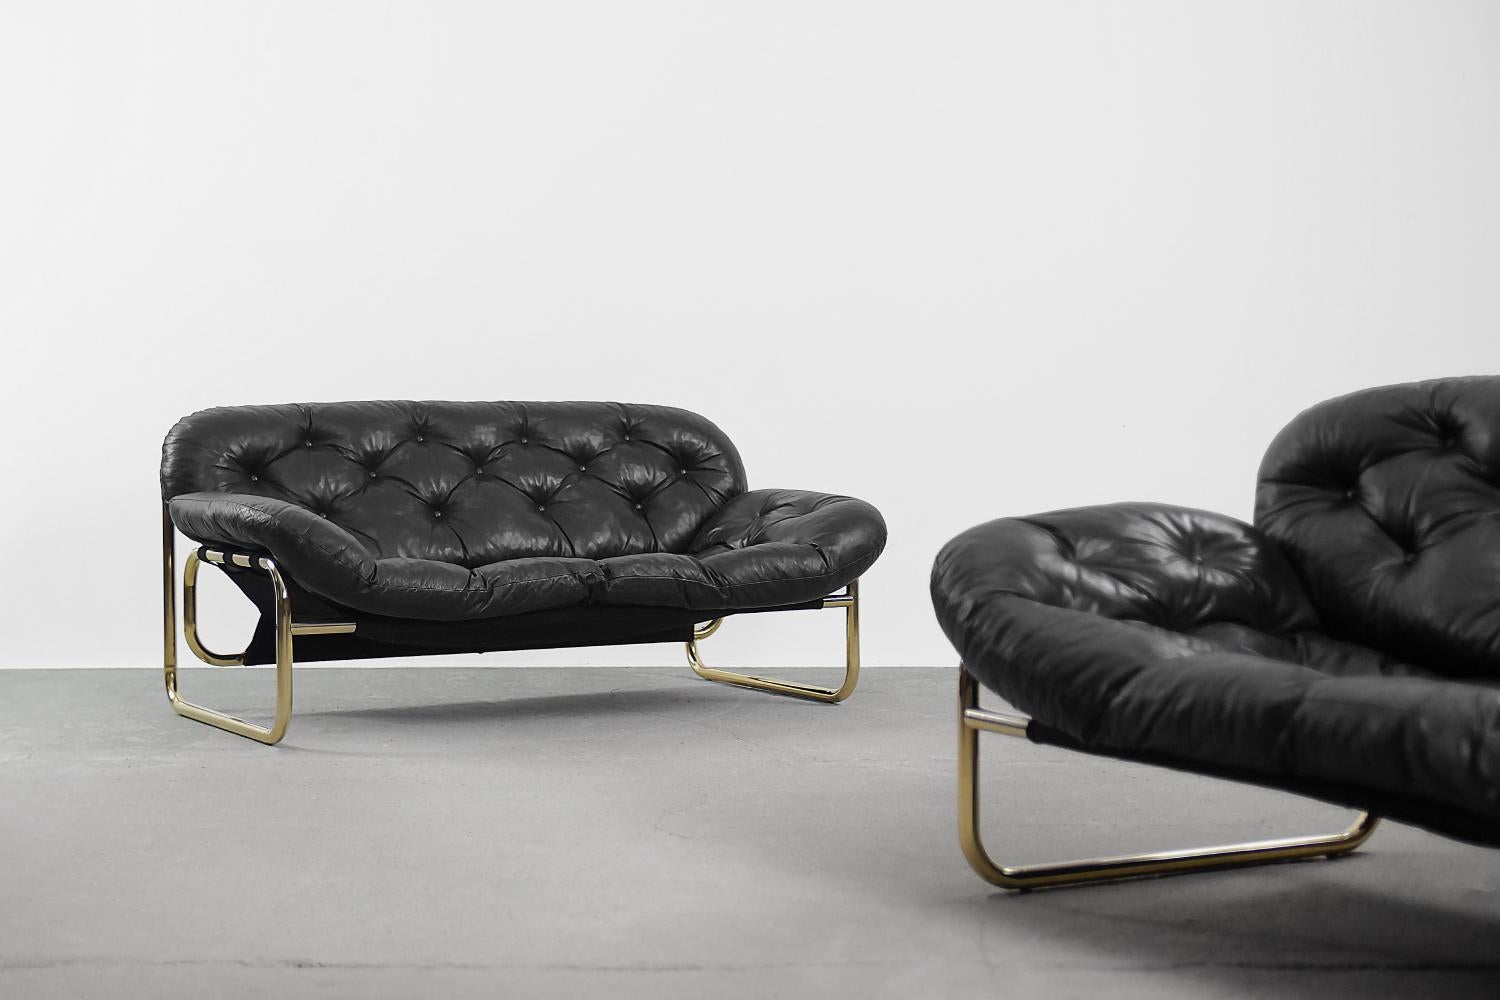 Vintage Scandinavian Leather Black Sofa by John-Bertil Häggström for Swed-Form For Sale 5